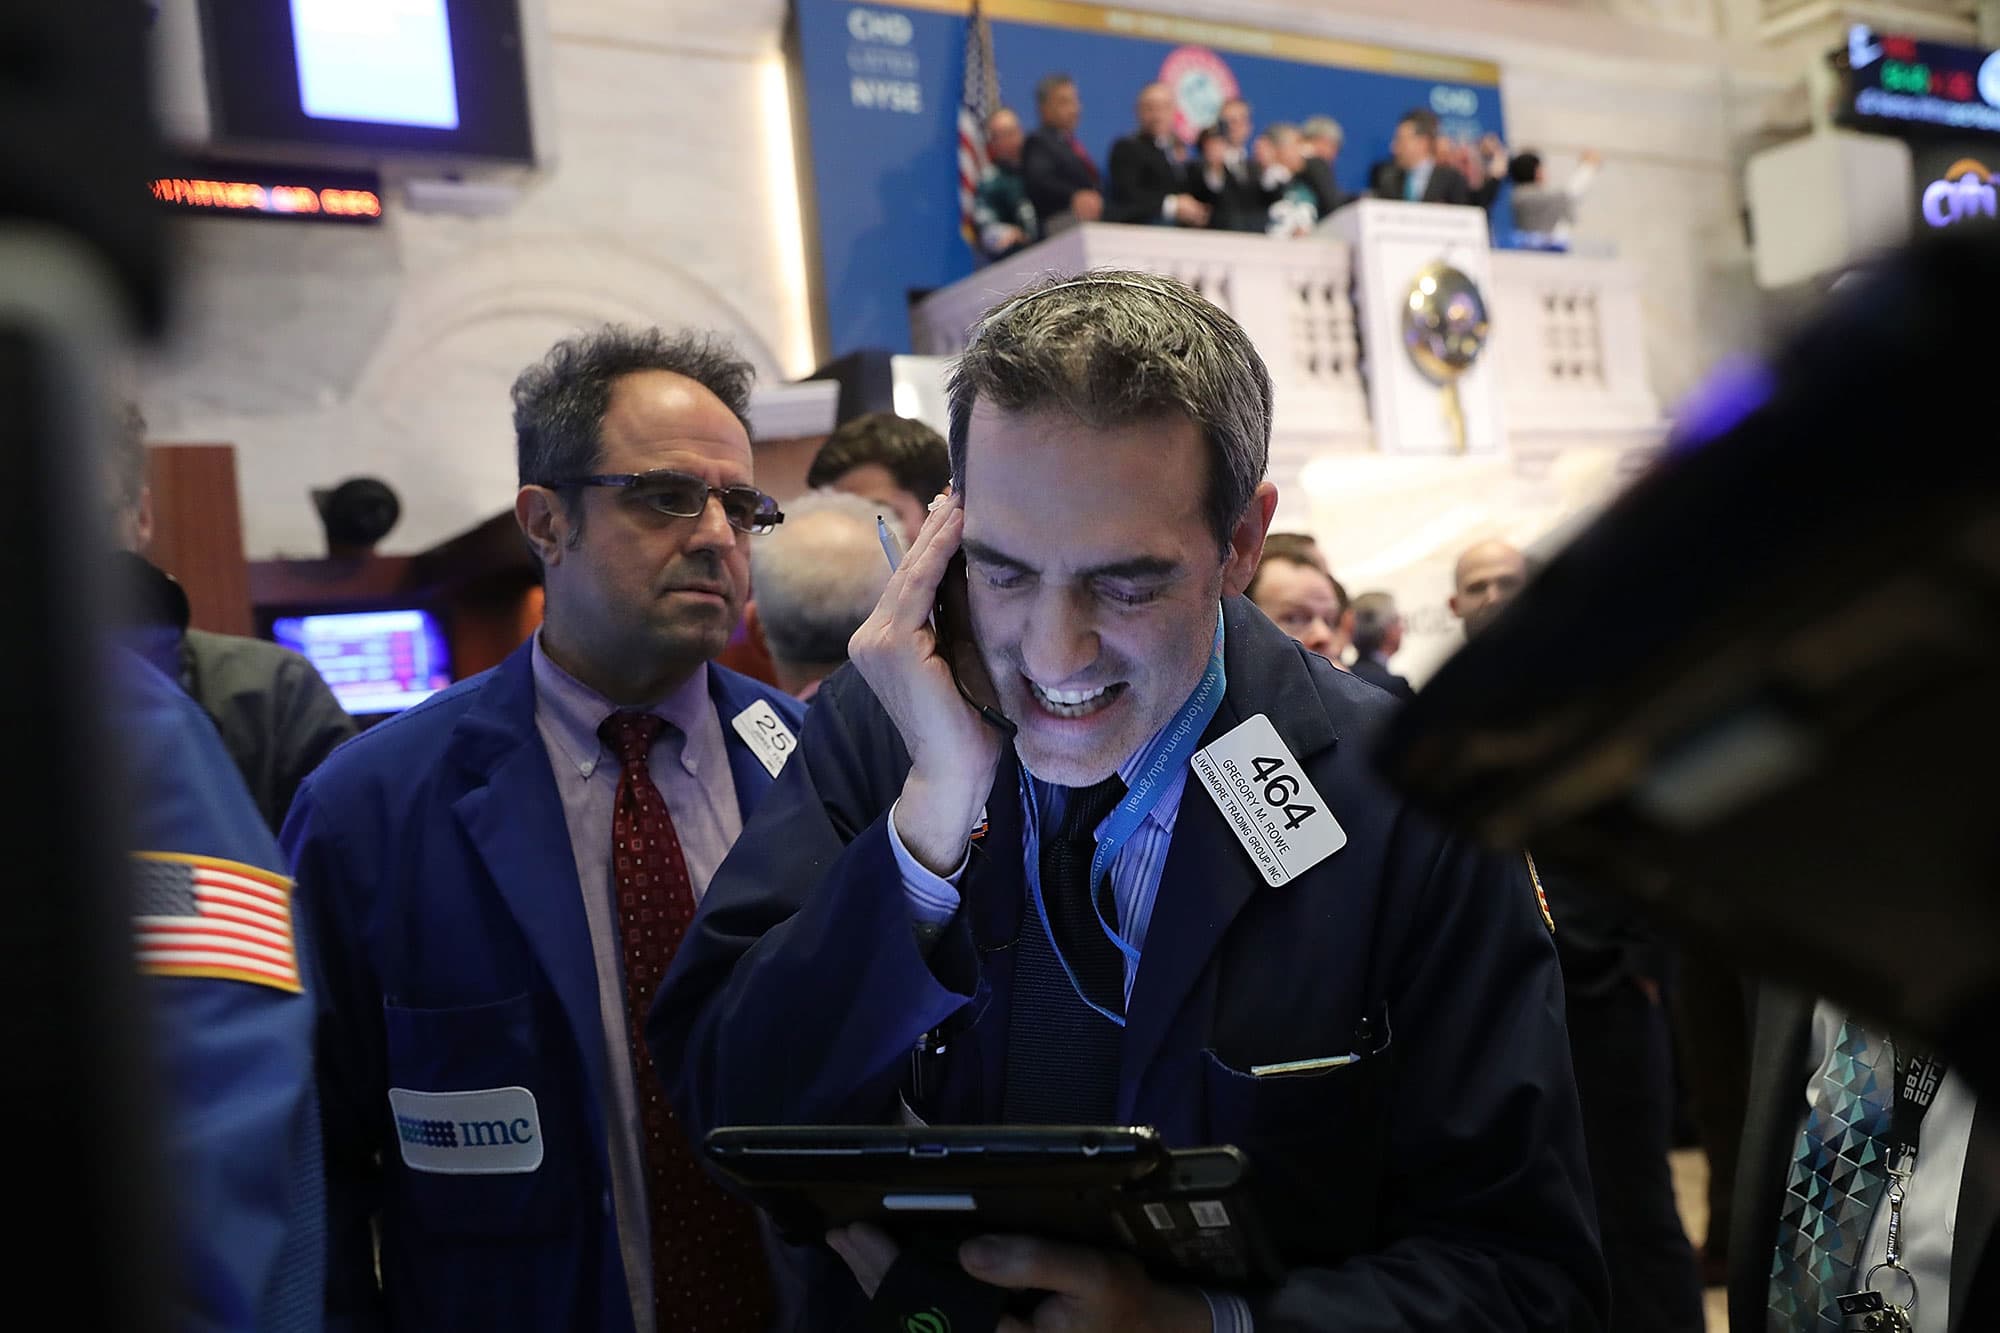 El S&P 500 va camino de su peor enero de la historia.  He aquí por qué las acciones se ven tan afectadas